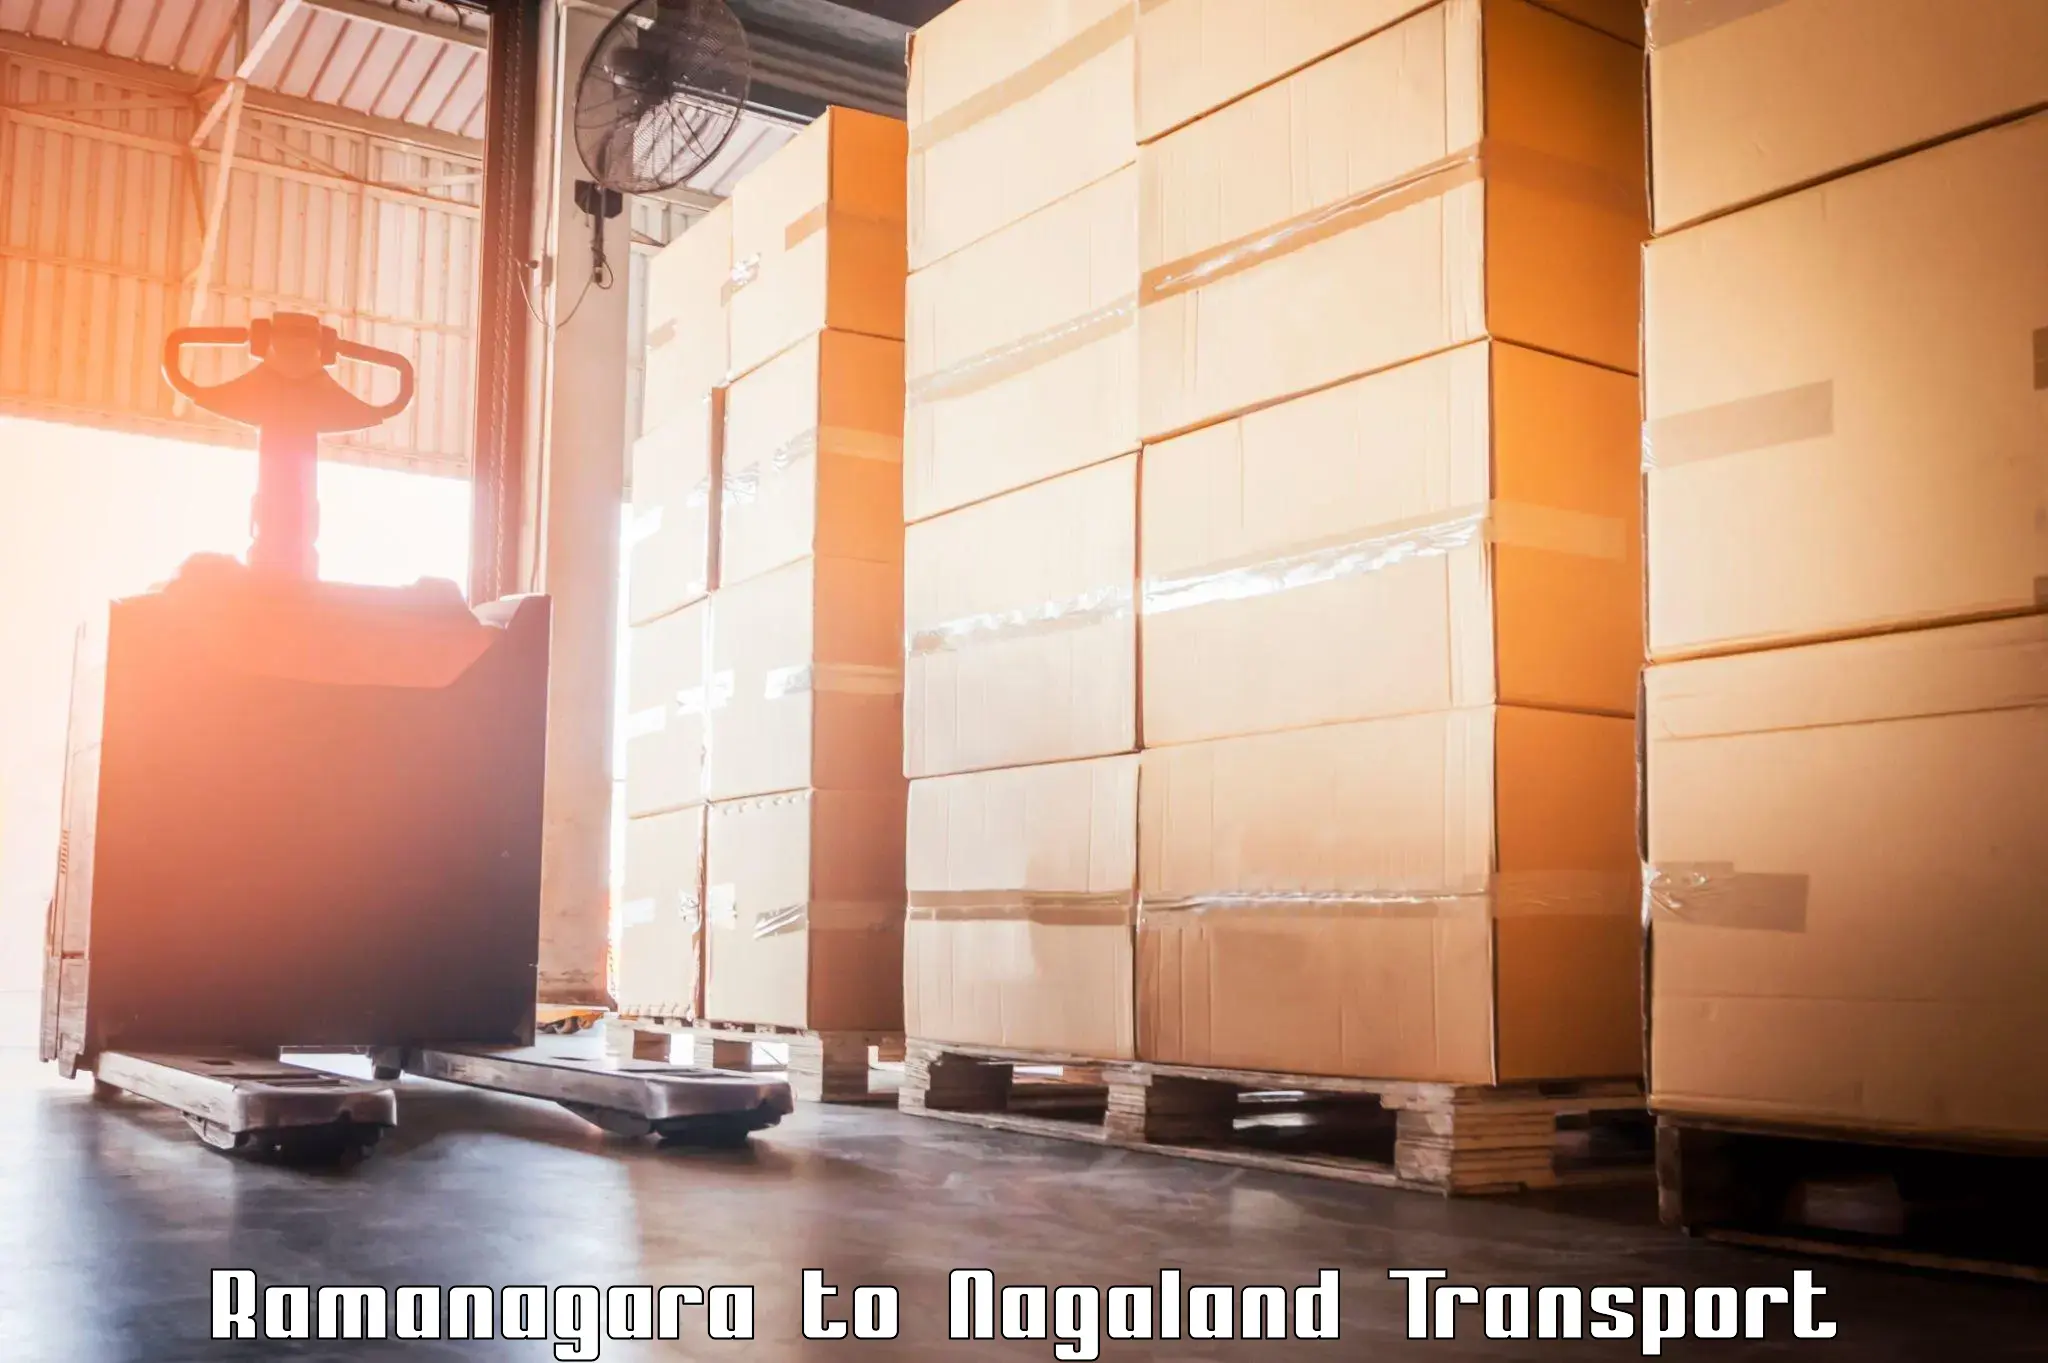 Online transport booking Ramanagara to Wokha